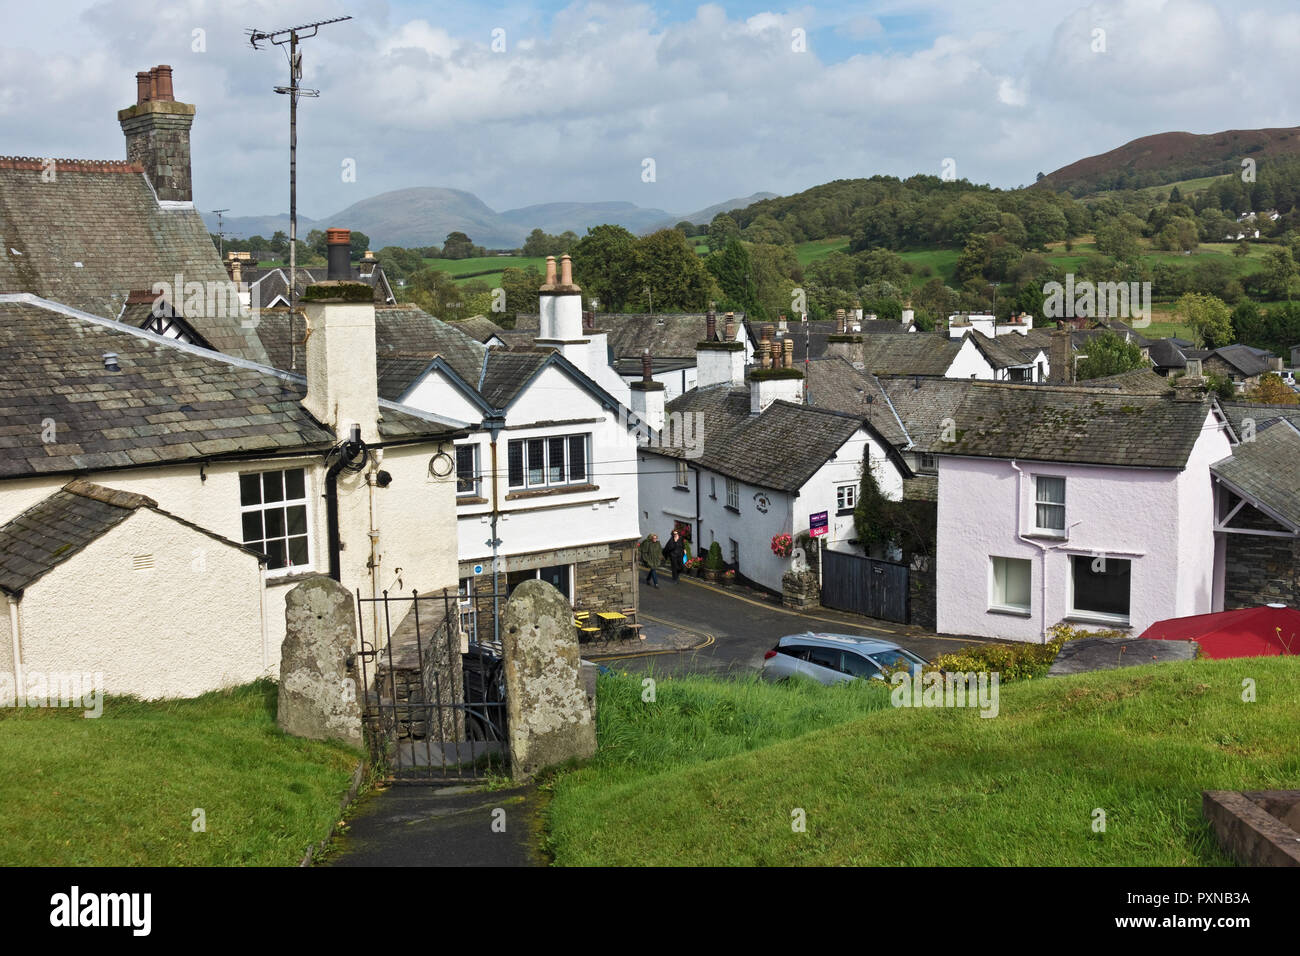 Hütten und Geschäfte Geschäfte im Spätsommer Hawkshead Village Lake District National Park Cumbria England Vereinigtes Königreich GB Großbritannien Stockfoto